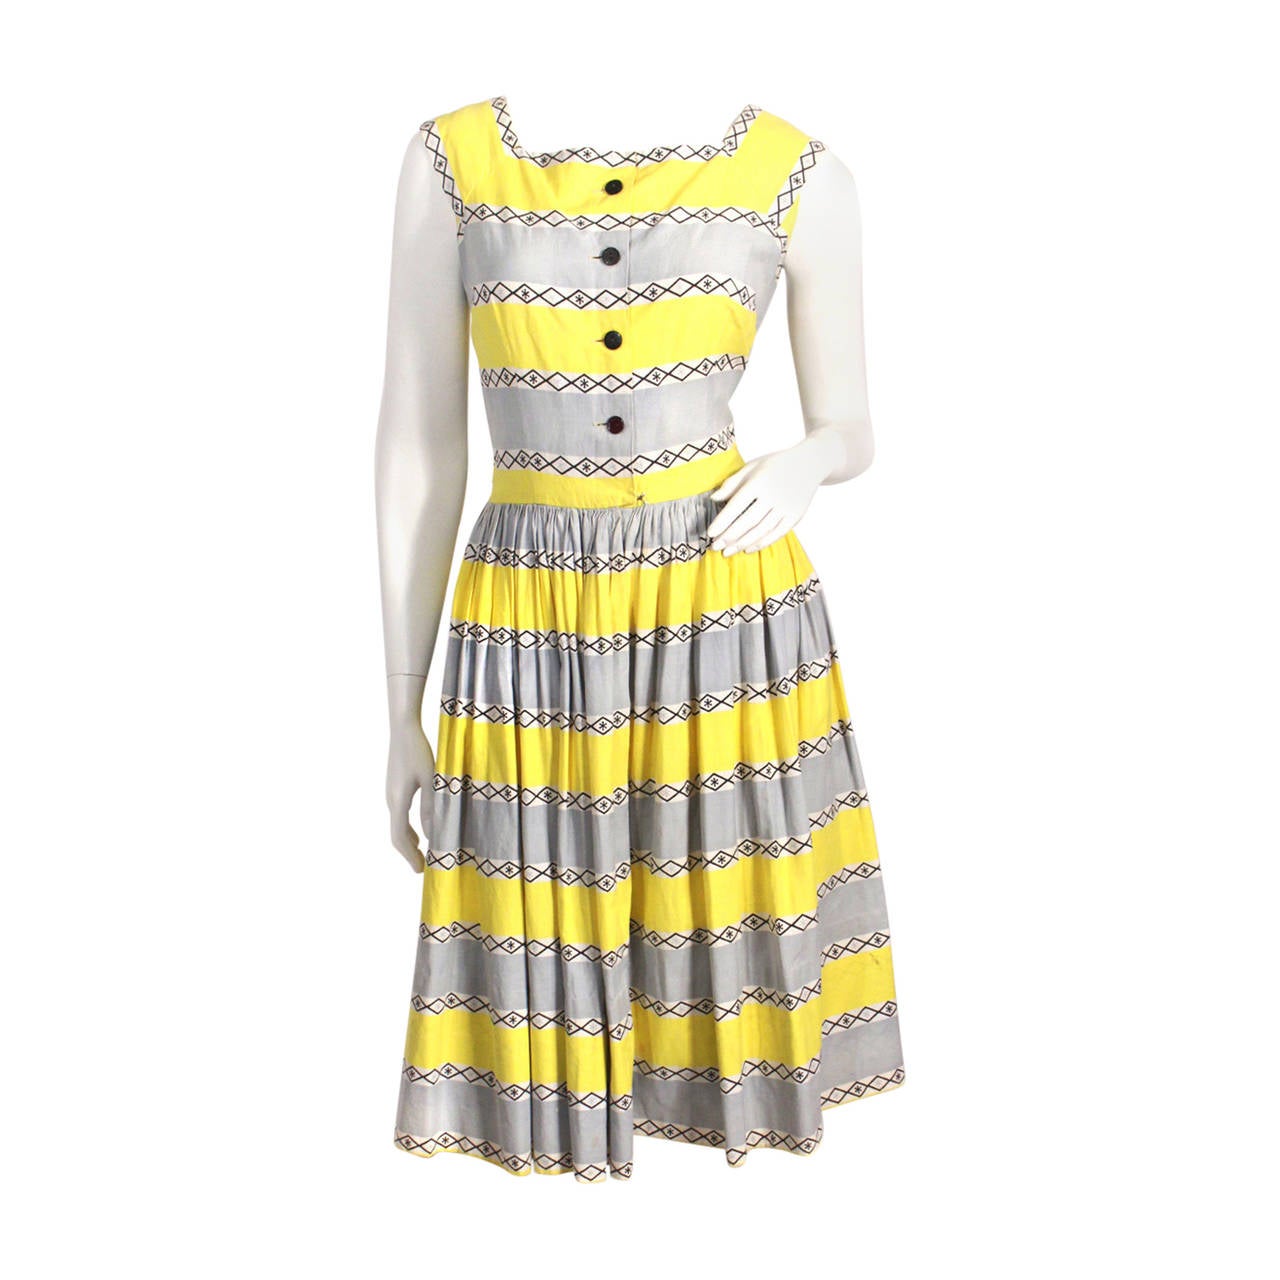 1950s Cotton Print Dress